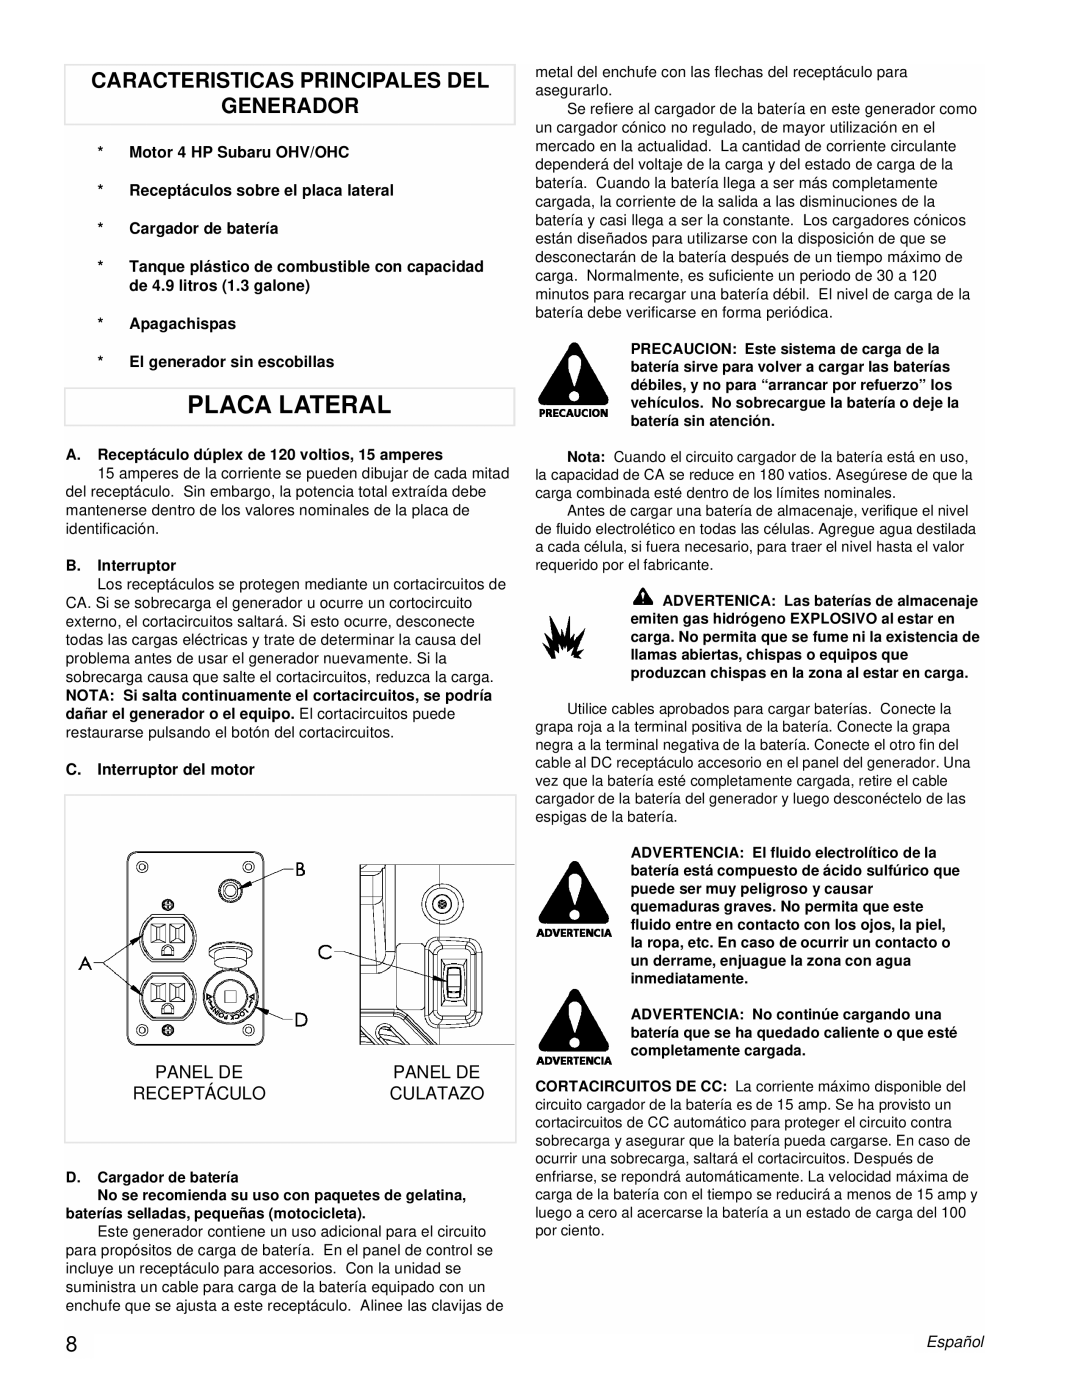 Powermate PMC431800.01 manual Placa Lateral, Caracteristicas Principales Del Generador 